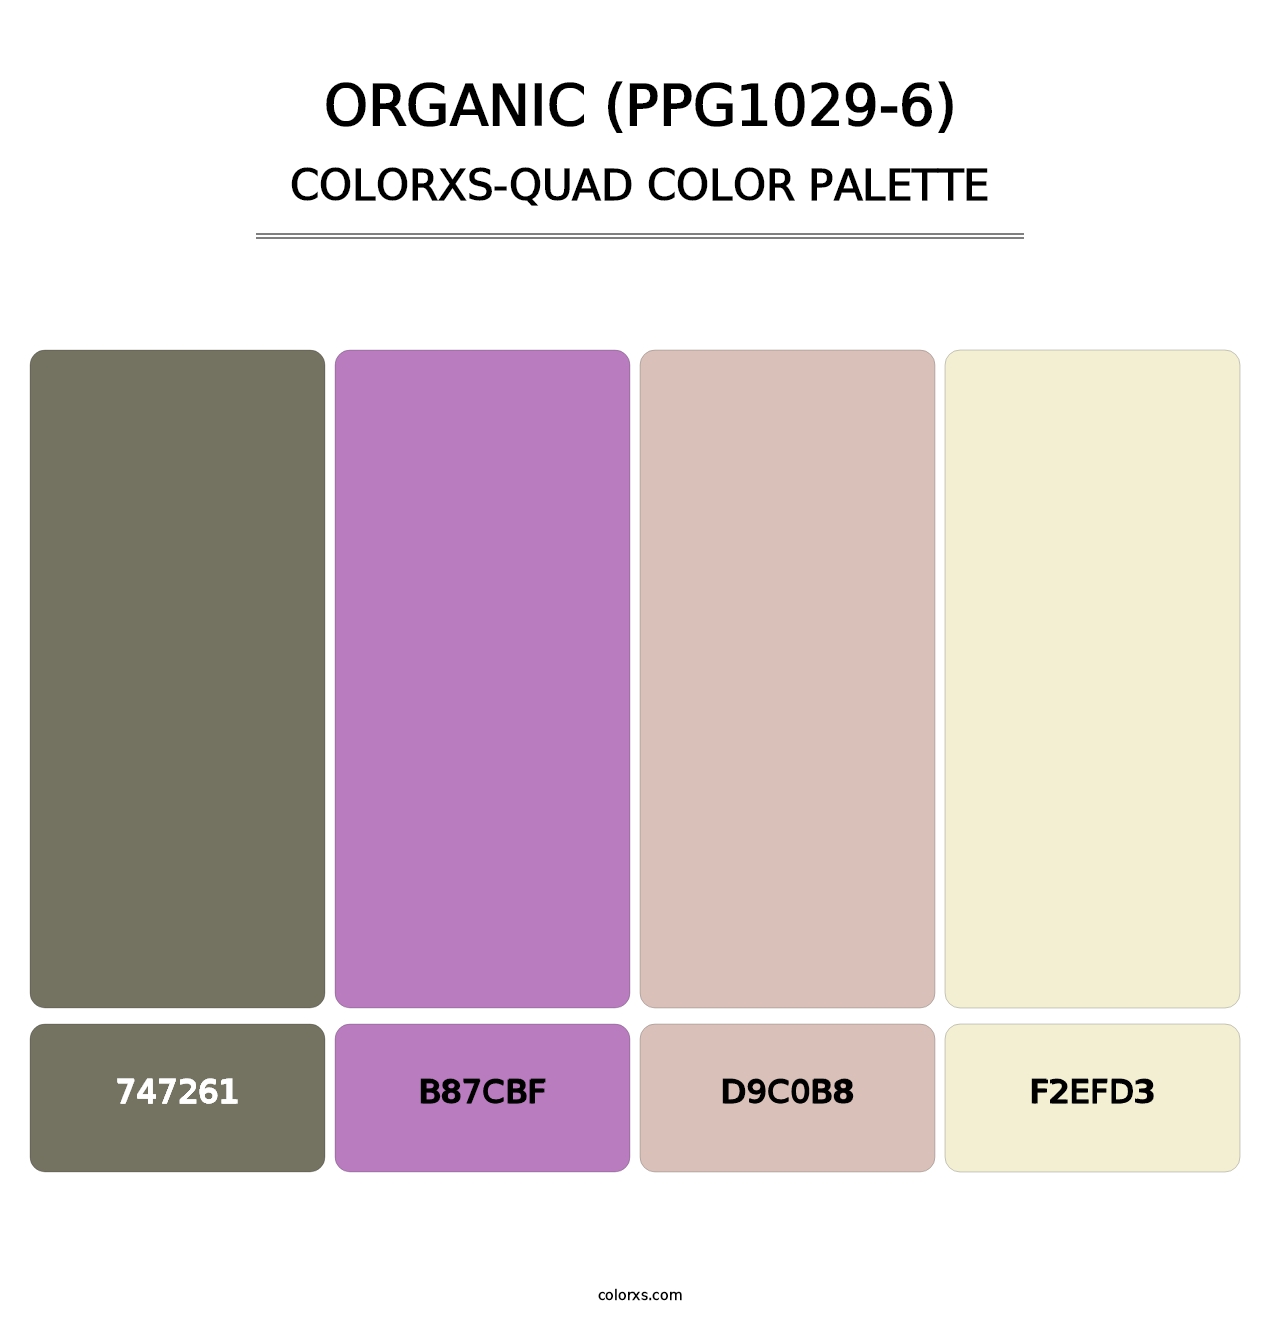 Organic (PPG1029-6) - Colorxs Quad Palette